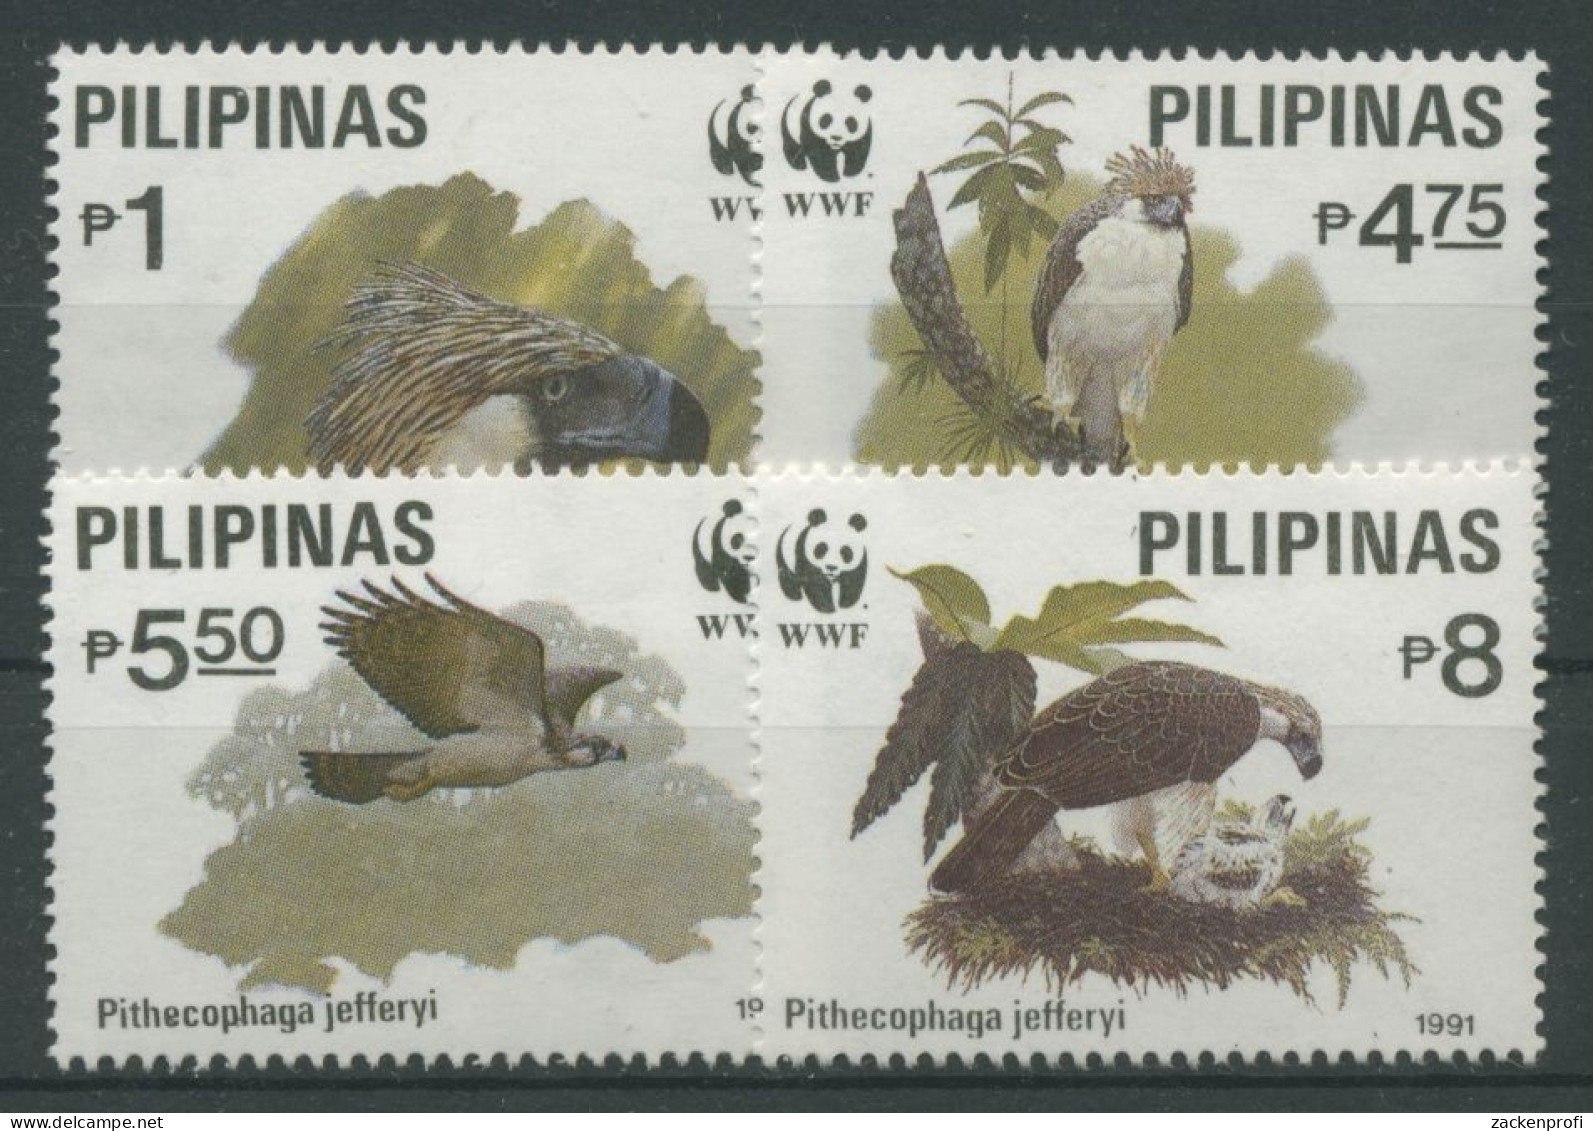 Philippinen 1991 WWF Tiere Vögel Affenadler 2038/41 Postfrisch - Philippines